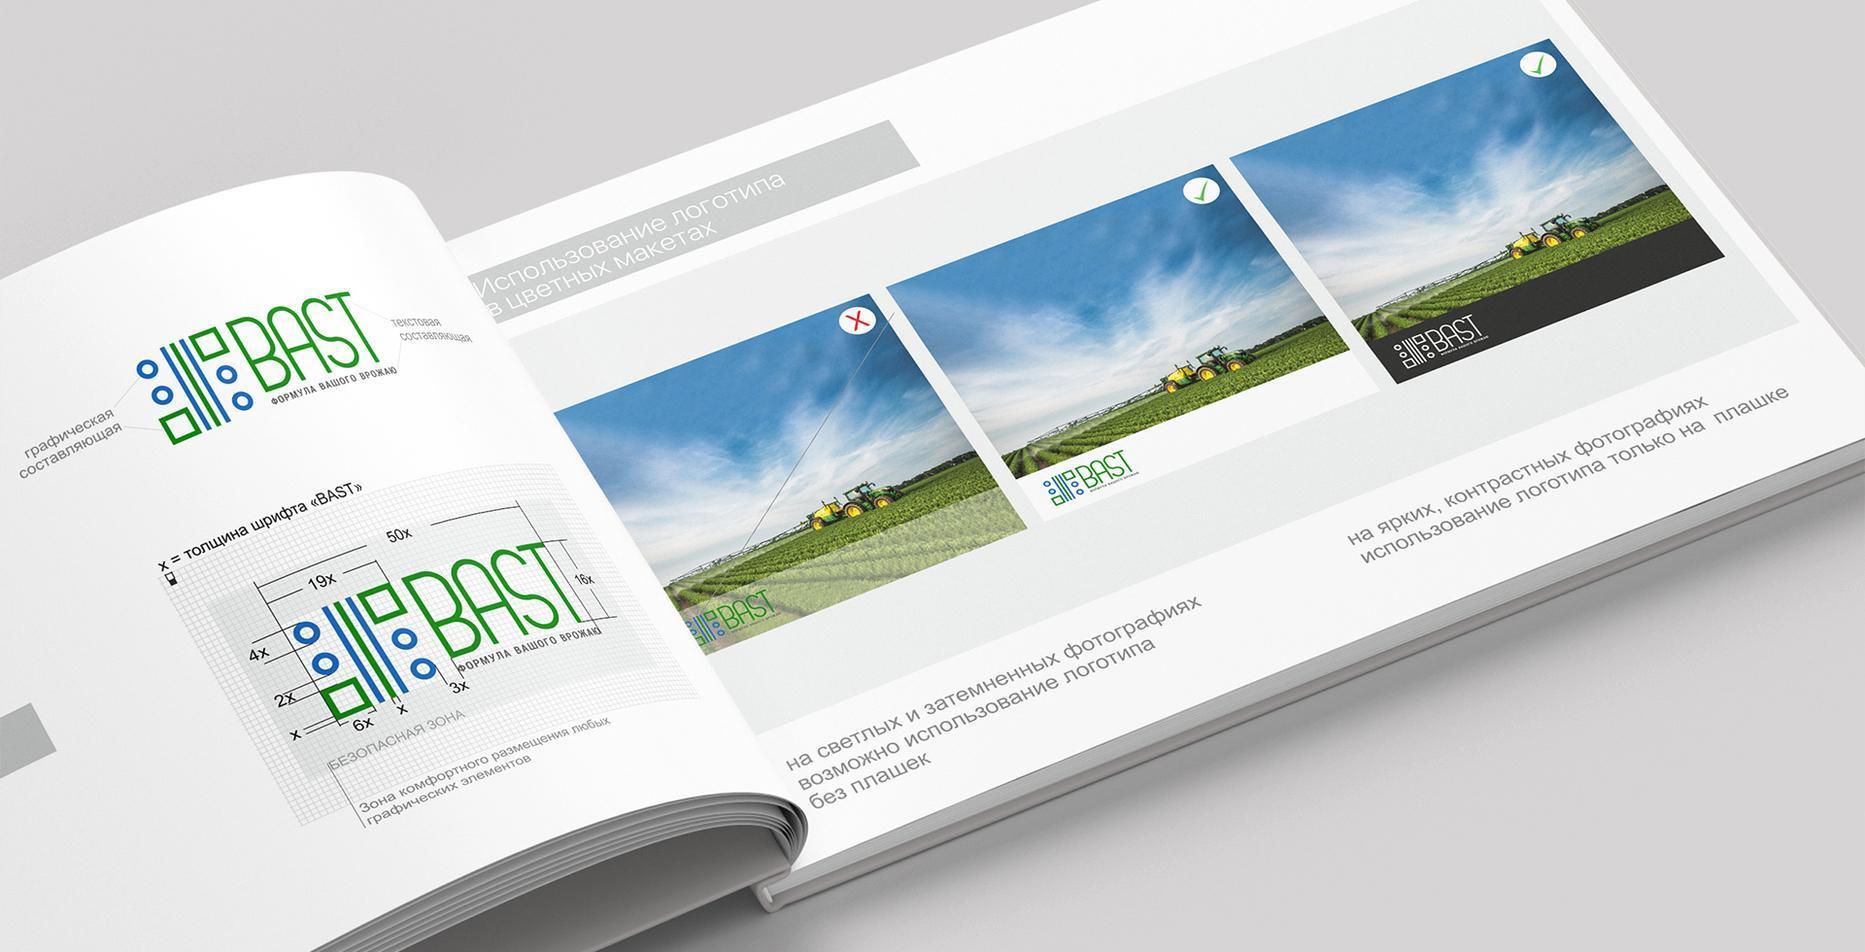 Кейс: разработка веб-сайта, логотипа, видео и брендинг для компании Bast — Rubarb - Изображение - 6